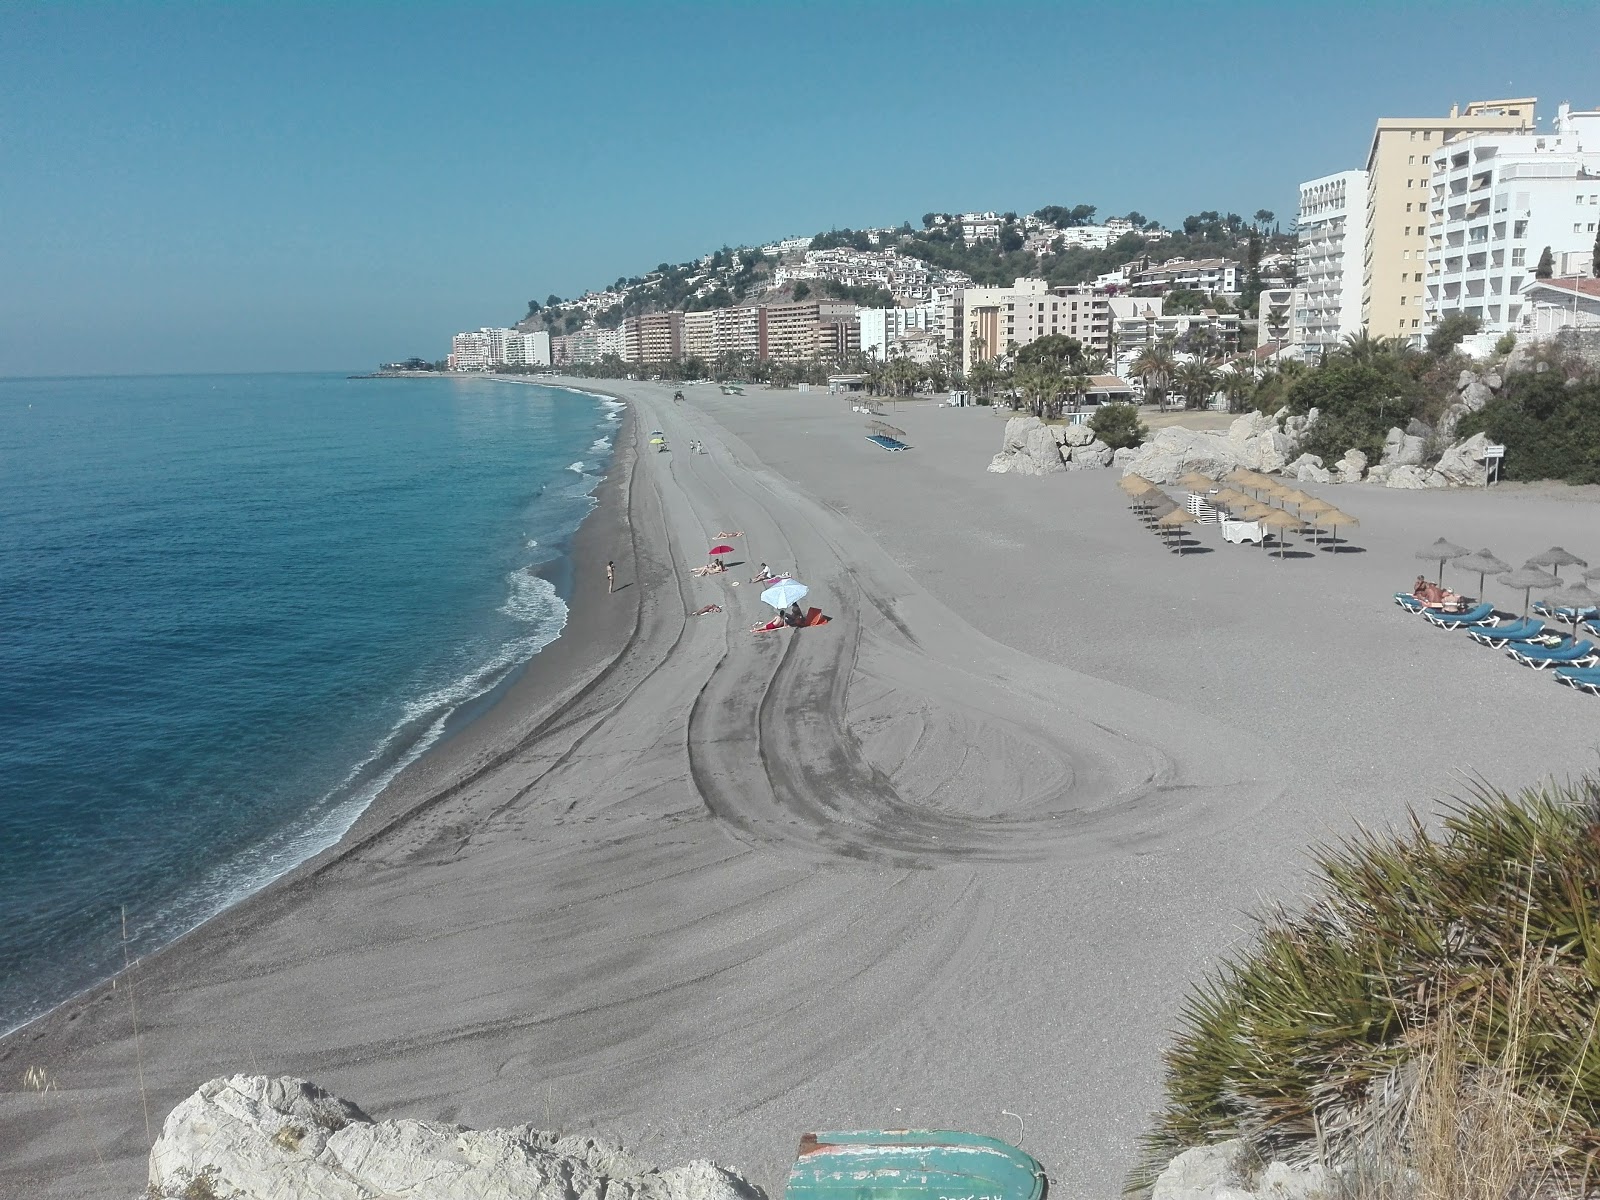 Playa de Velilla'in fotoğrafı gri ince çakıl taş yüzey ile